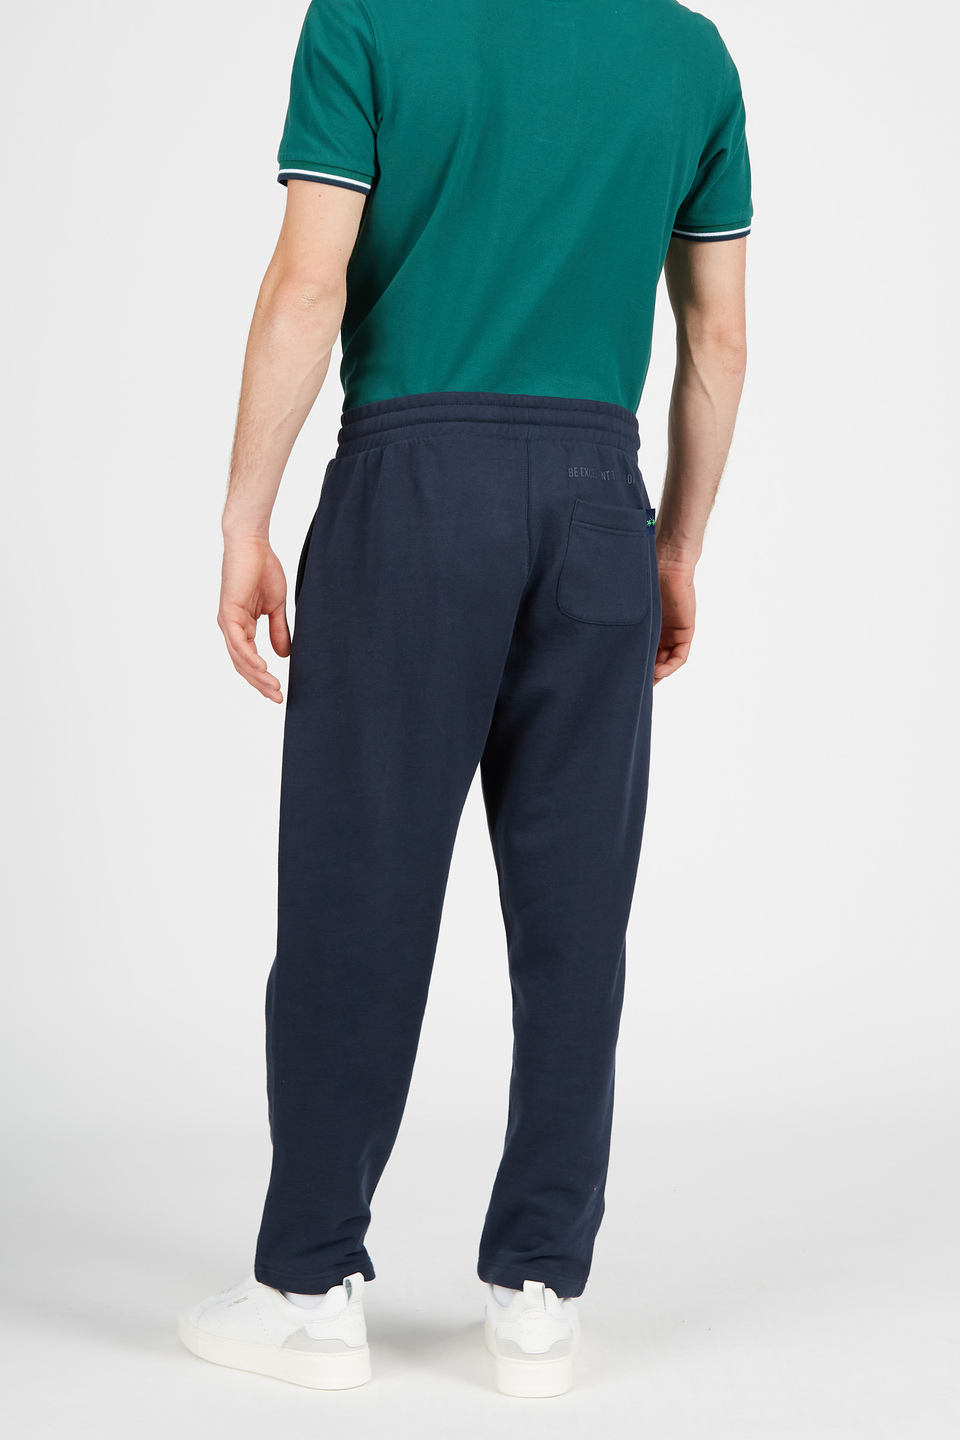 Pantalon homme de joggeur en coton avec cordon de serrage | La Martina - Official Online Shop